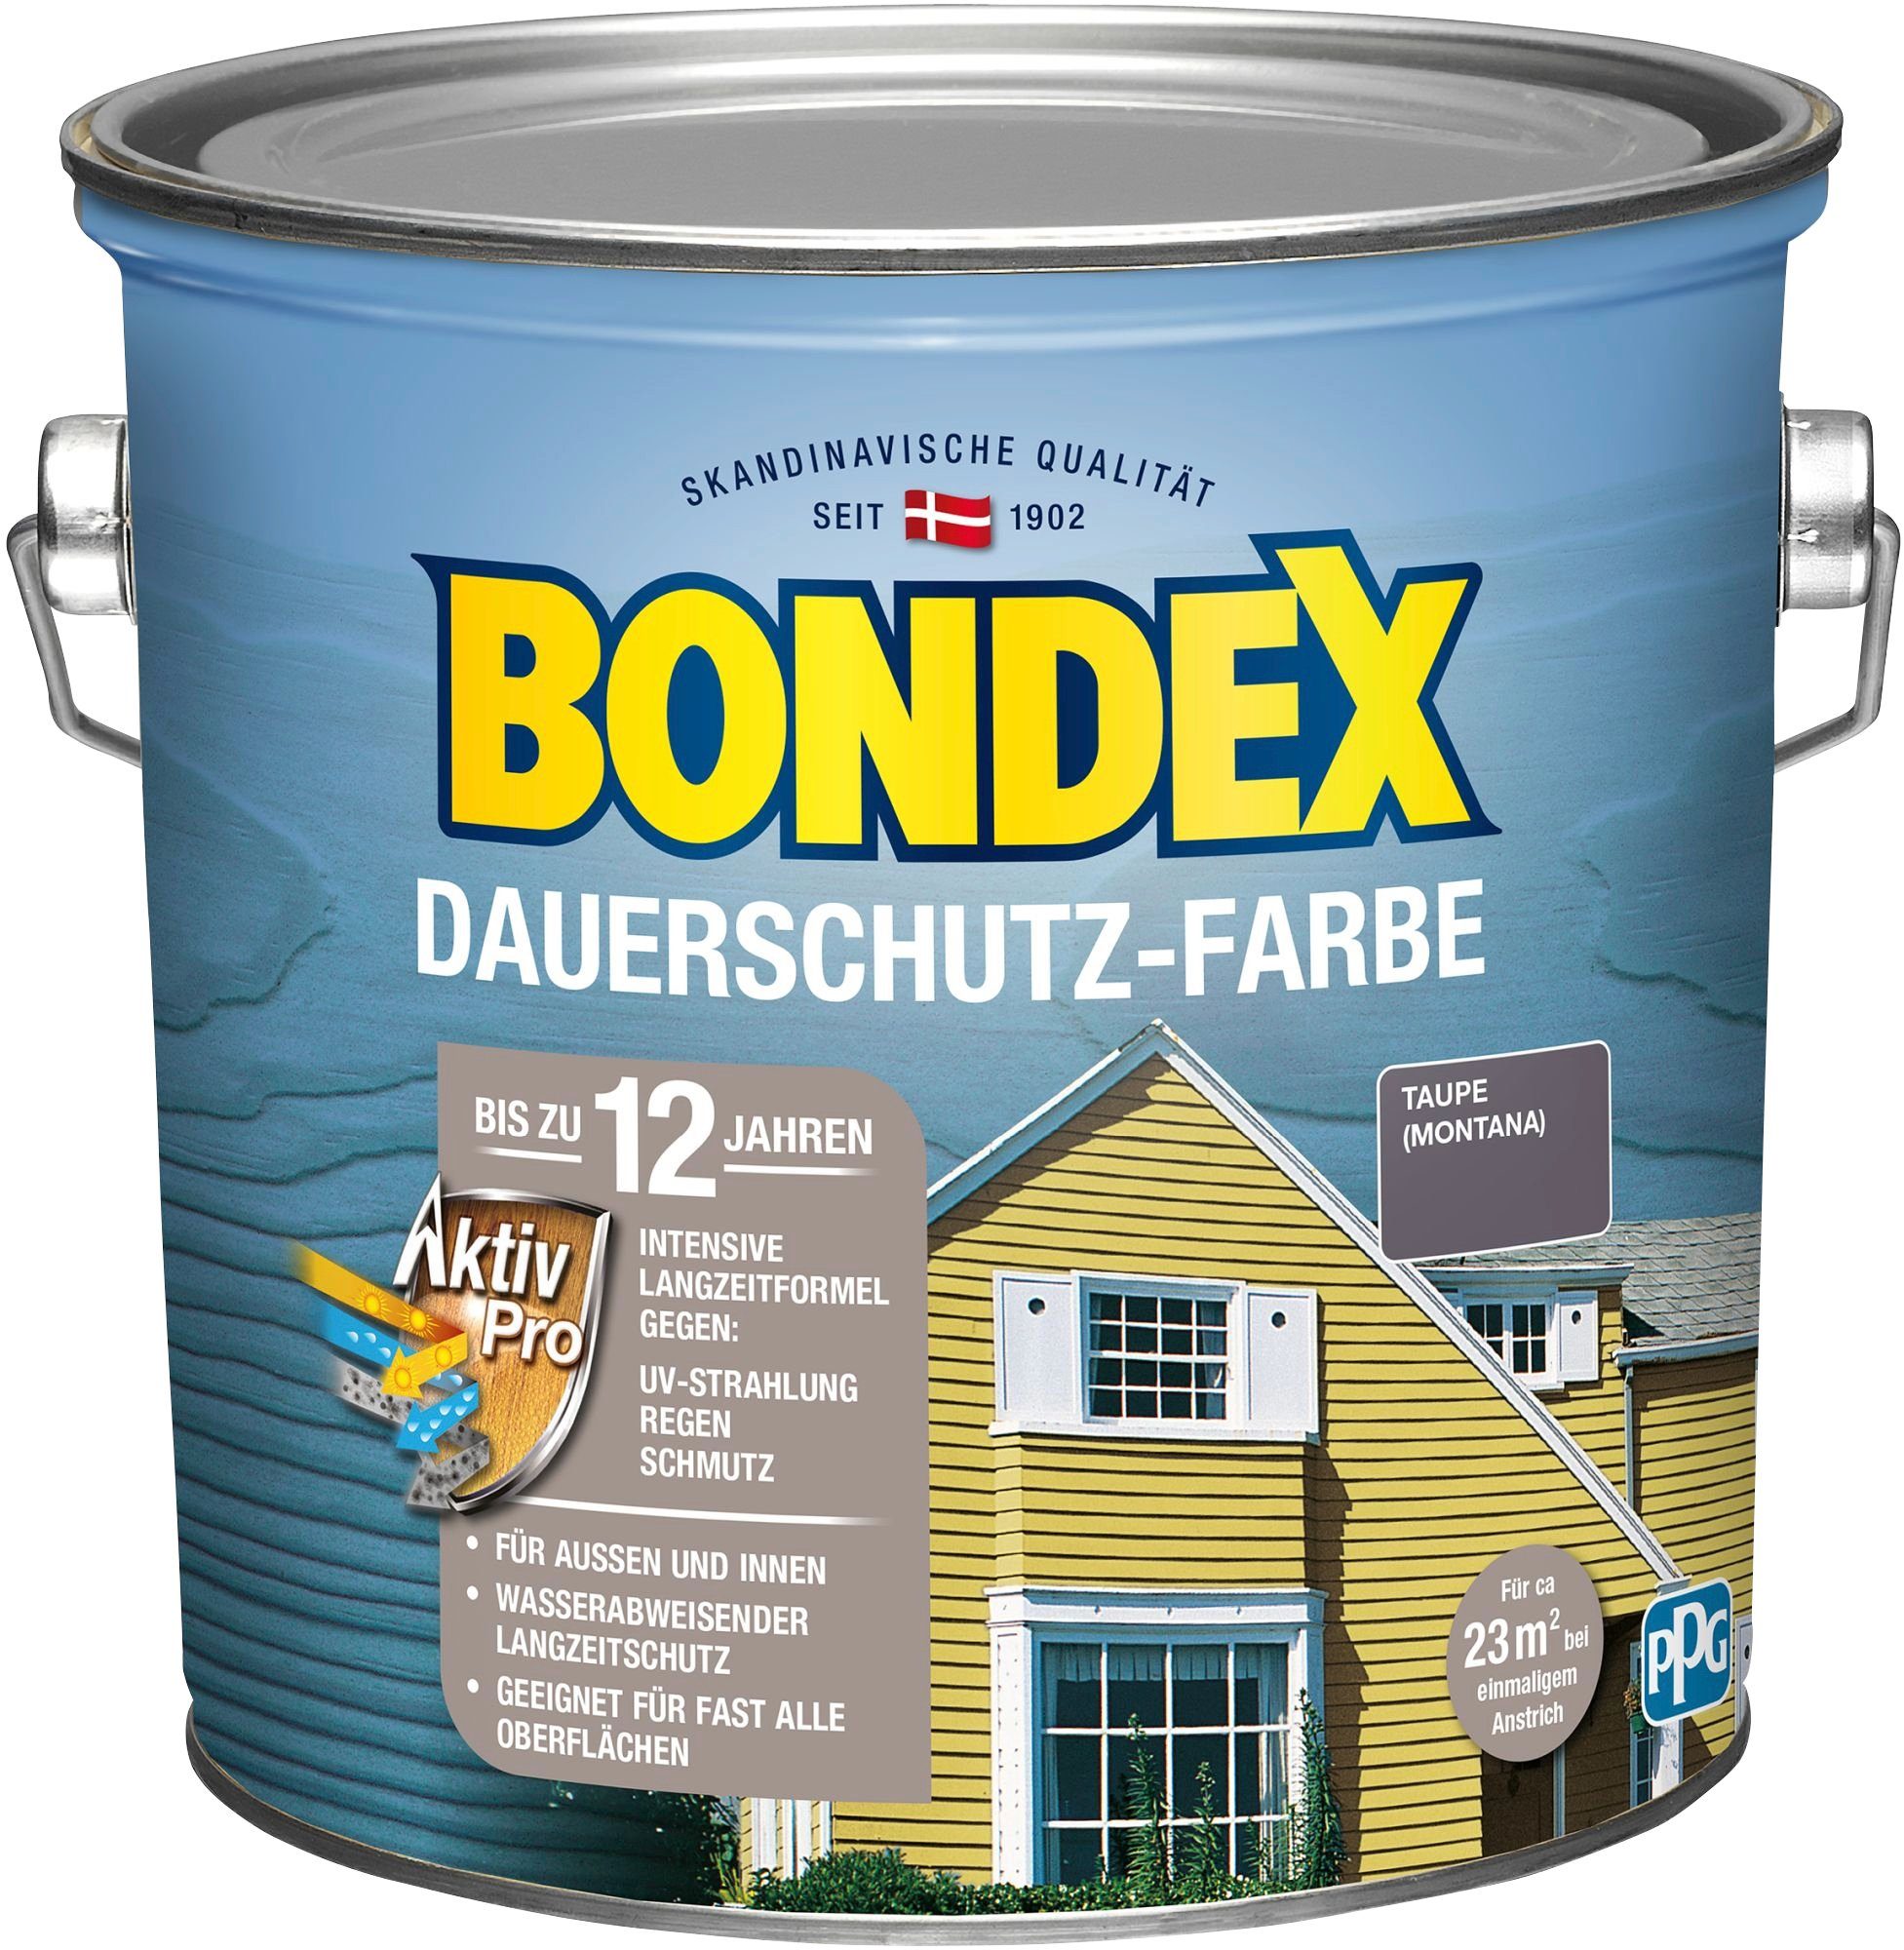 Bondex Wetterschutzfarbe DAUERSCHUTZ-FARBE, für Außen und Innen, Wetterschutz mit Aktiv Pro Langzeitformel Taupe / Montana